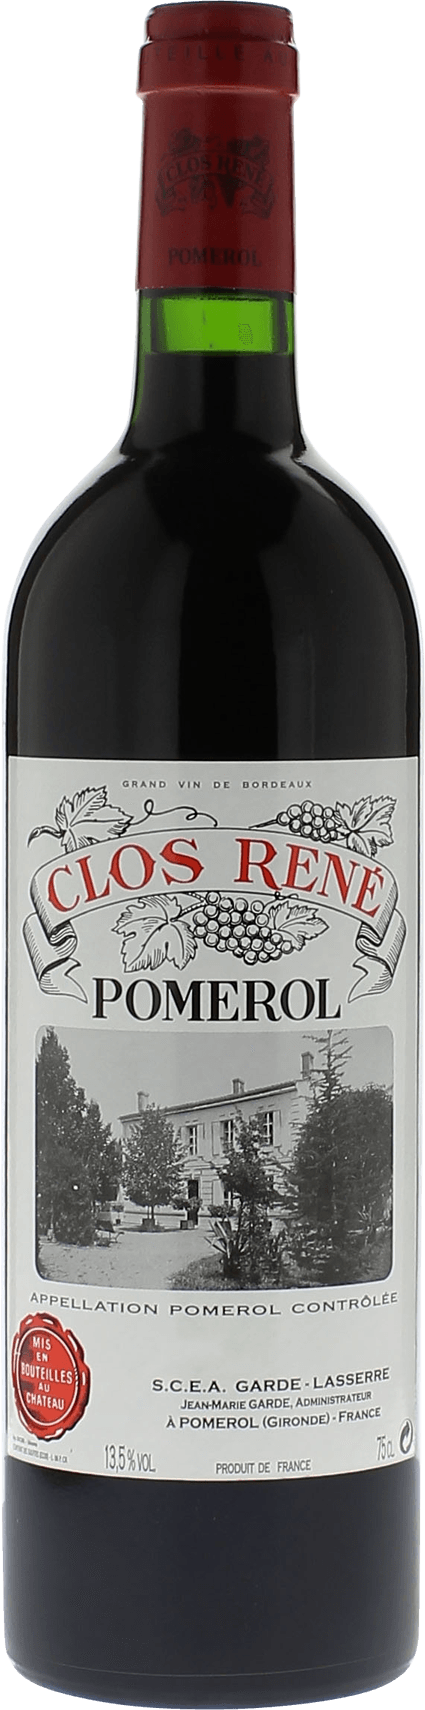 Clos rene 2008  Pomerol, Bordeaux rouge